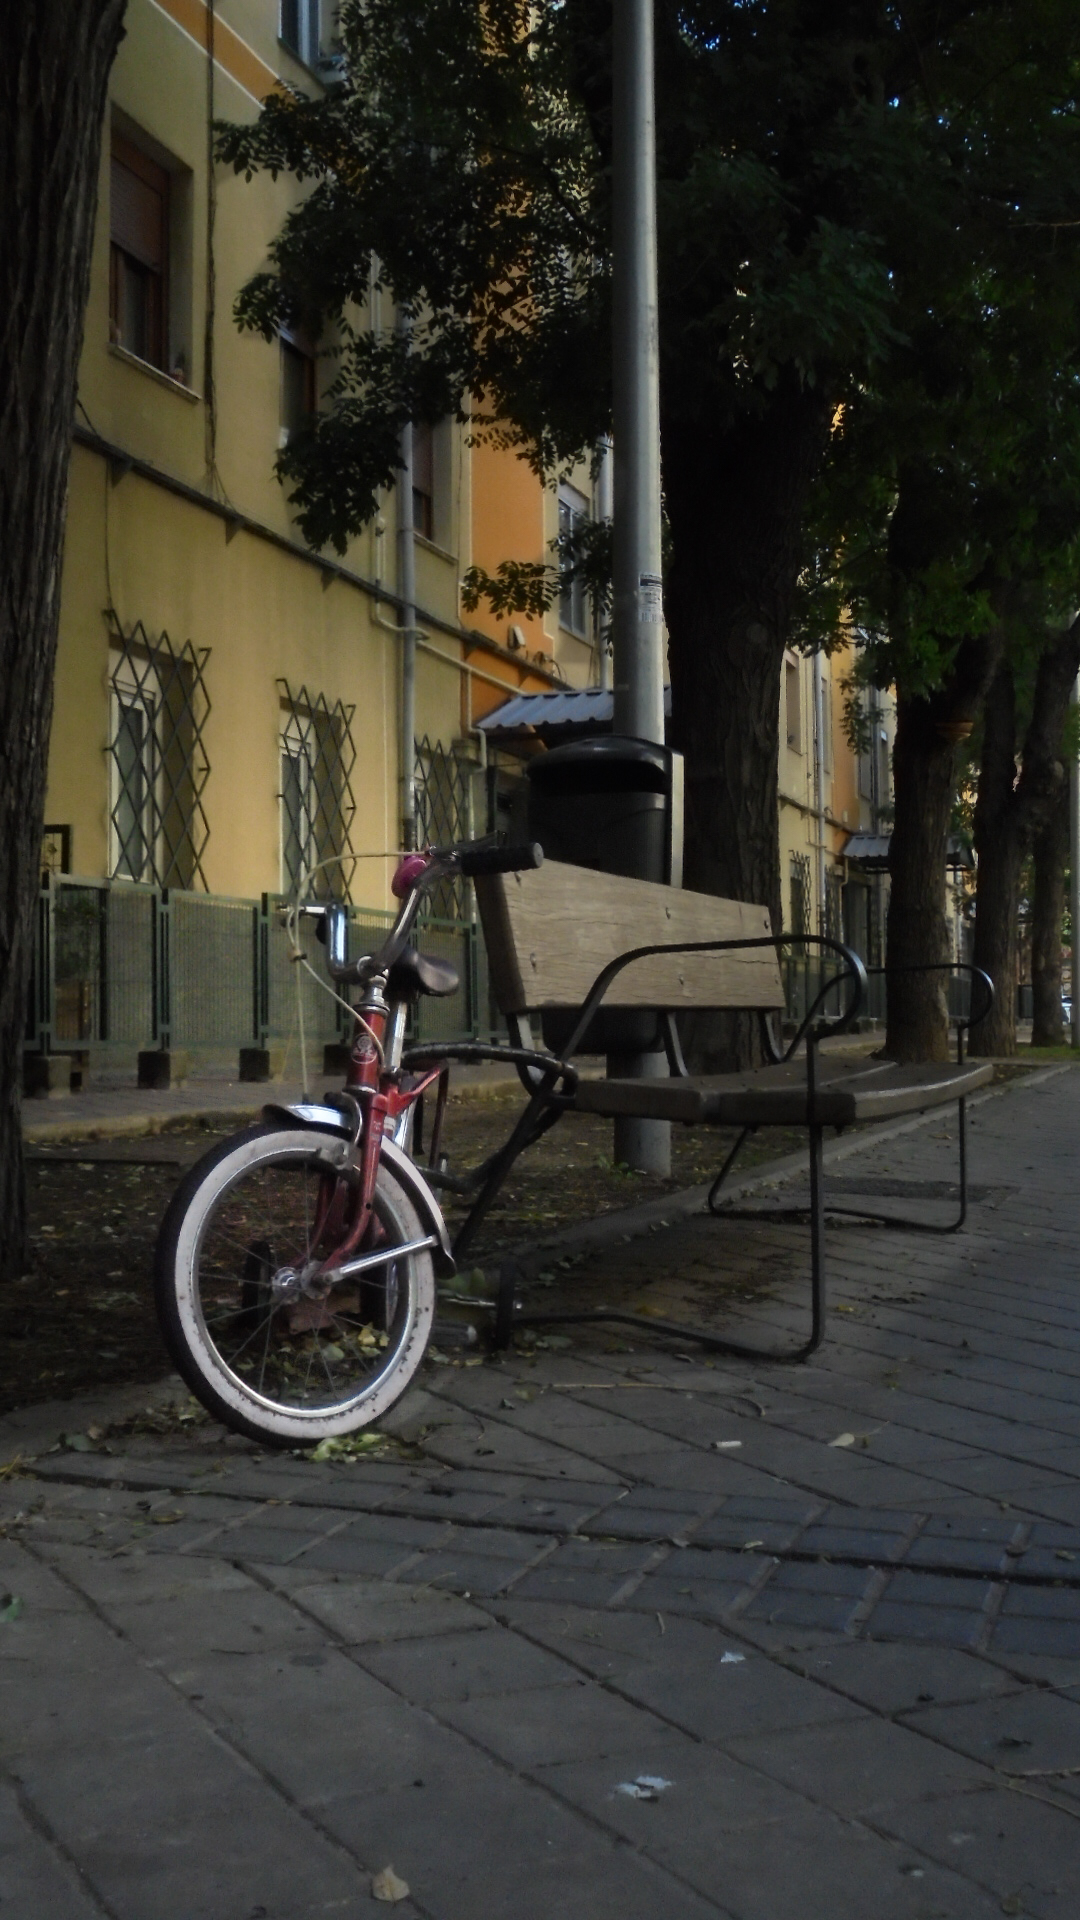 Memorias en la acera: La bicicleta de un niño que ya no...